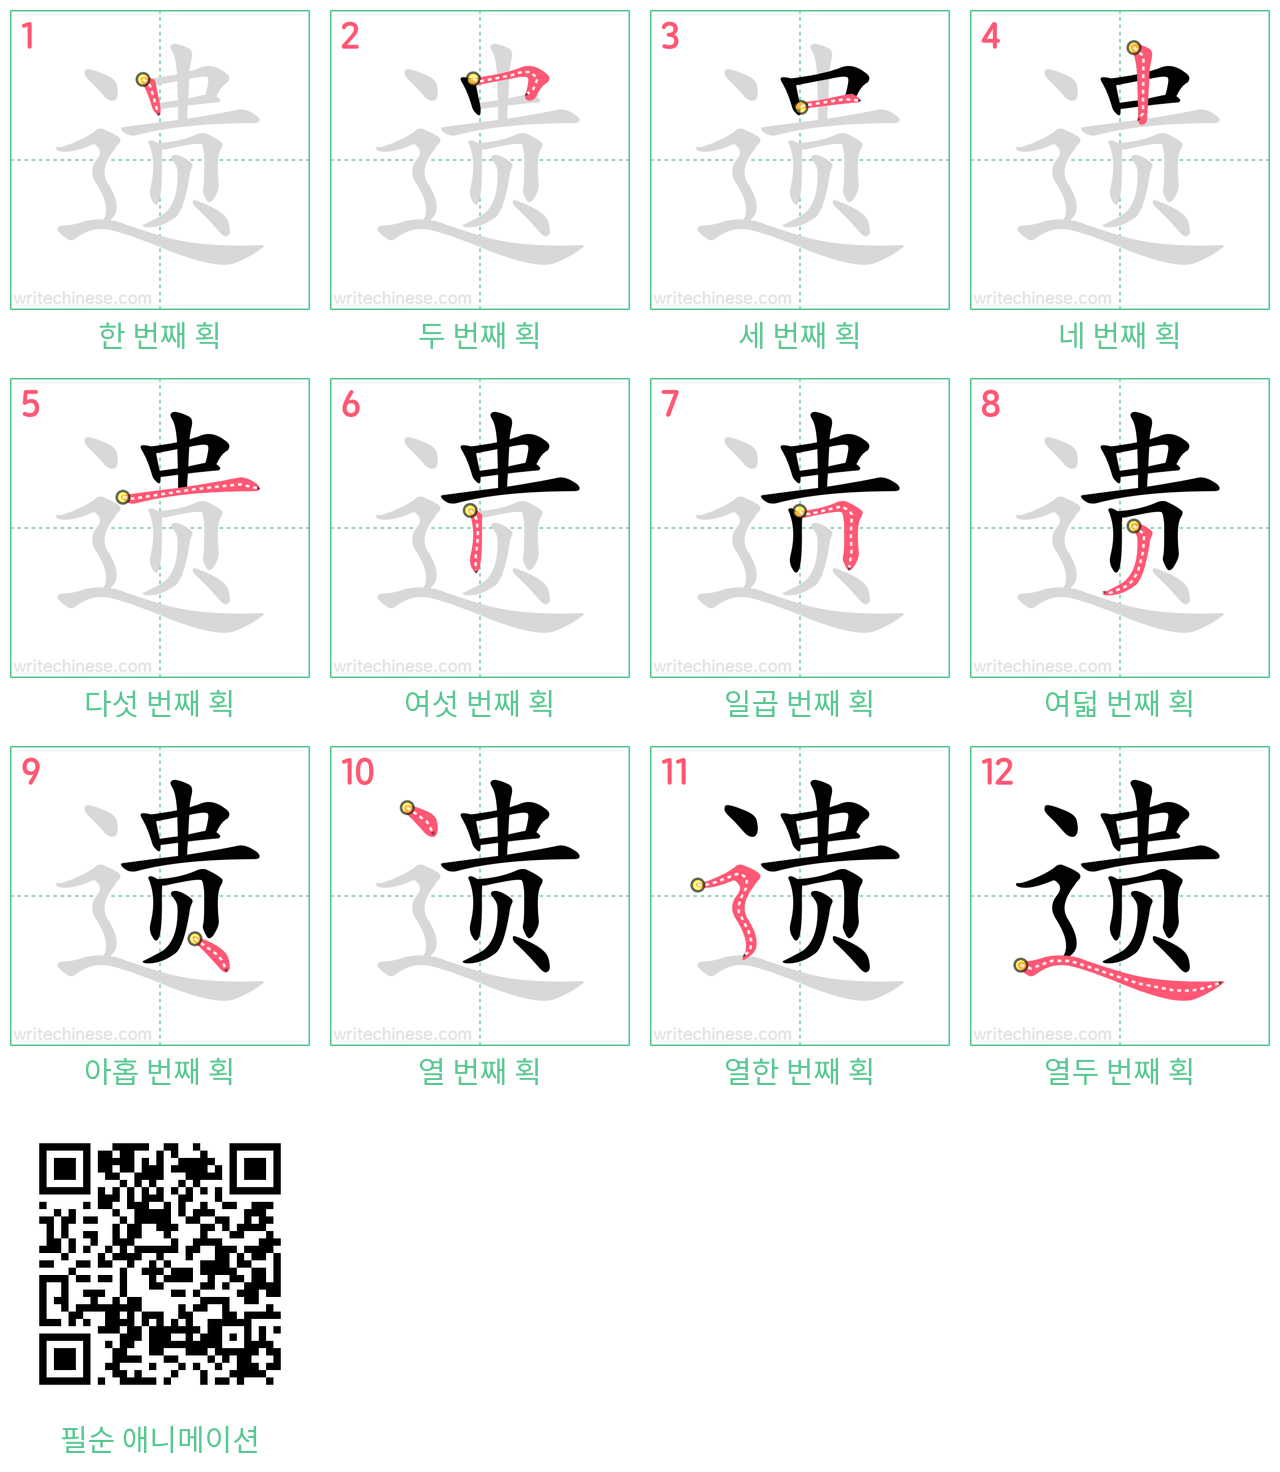 遗 step-by-step stroke order diagrams